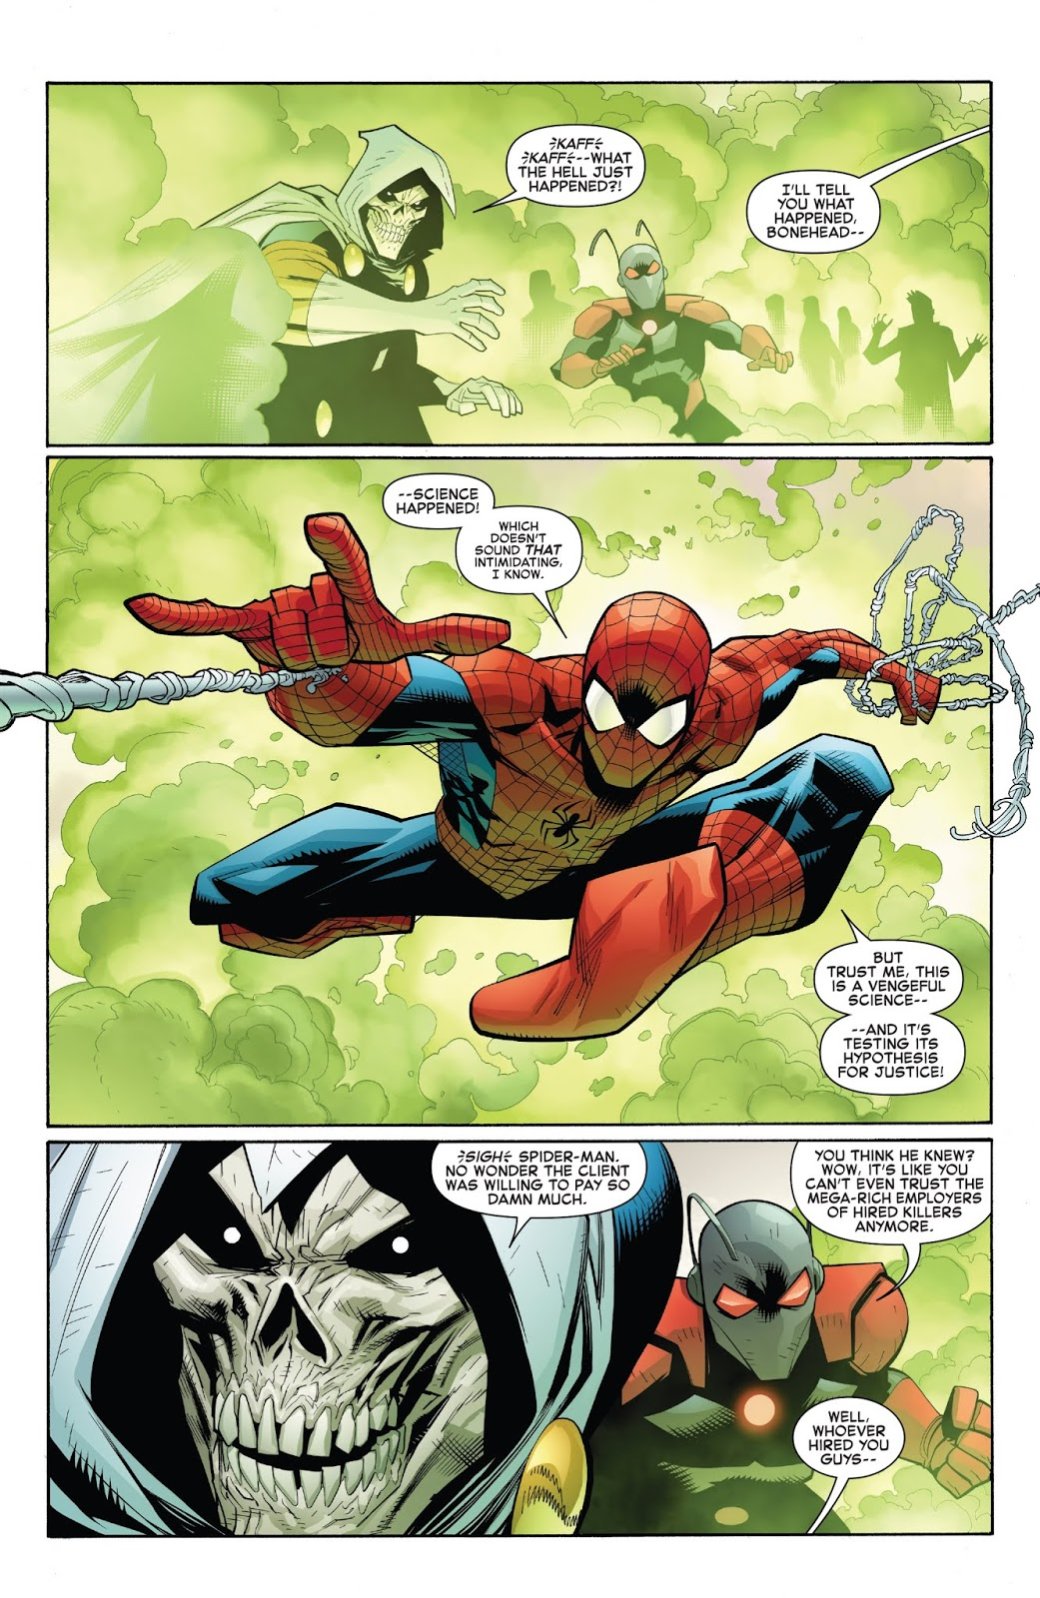 Галерея Человек-паук: Возвращение к основам. Как Marvel спасает супергероя от самой себя - 1 фото